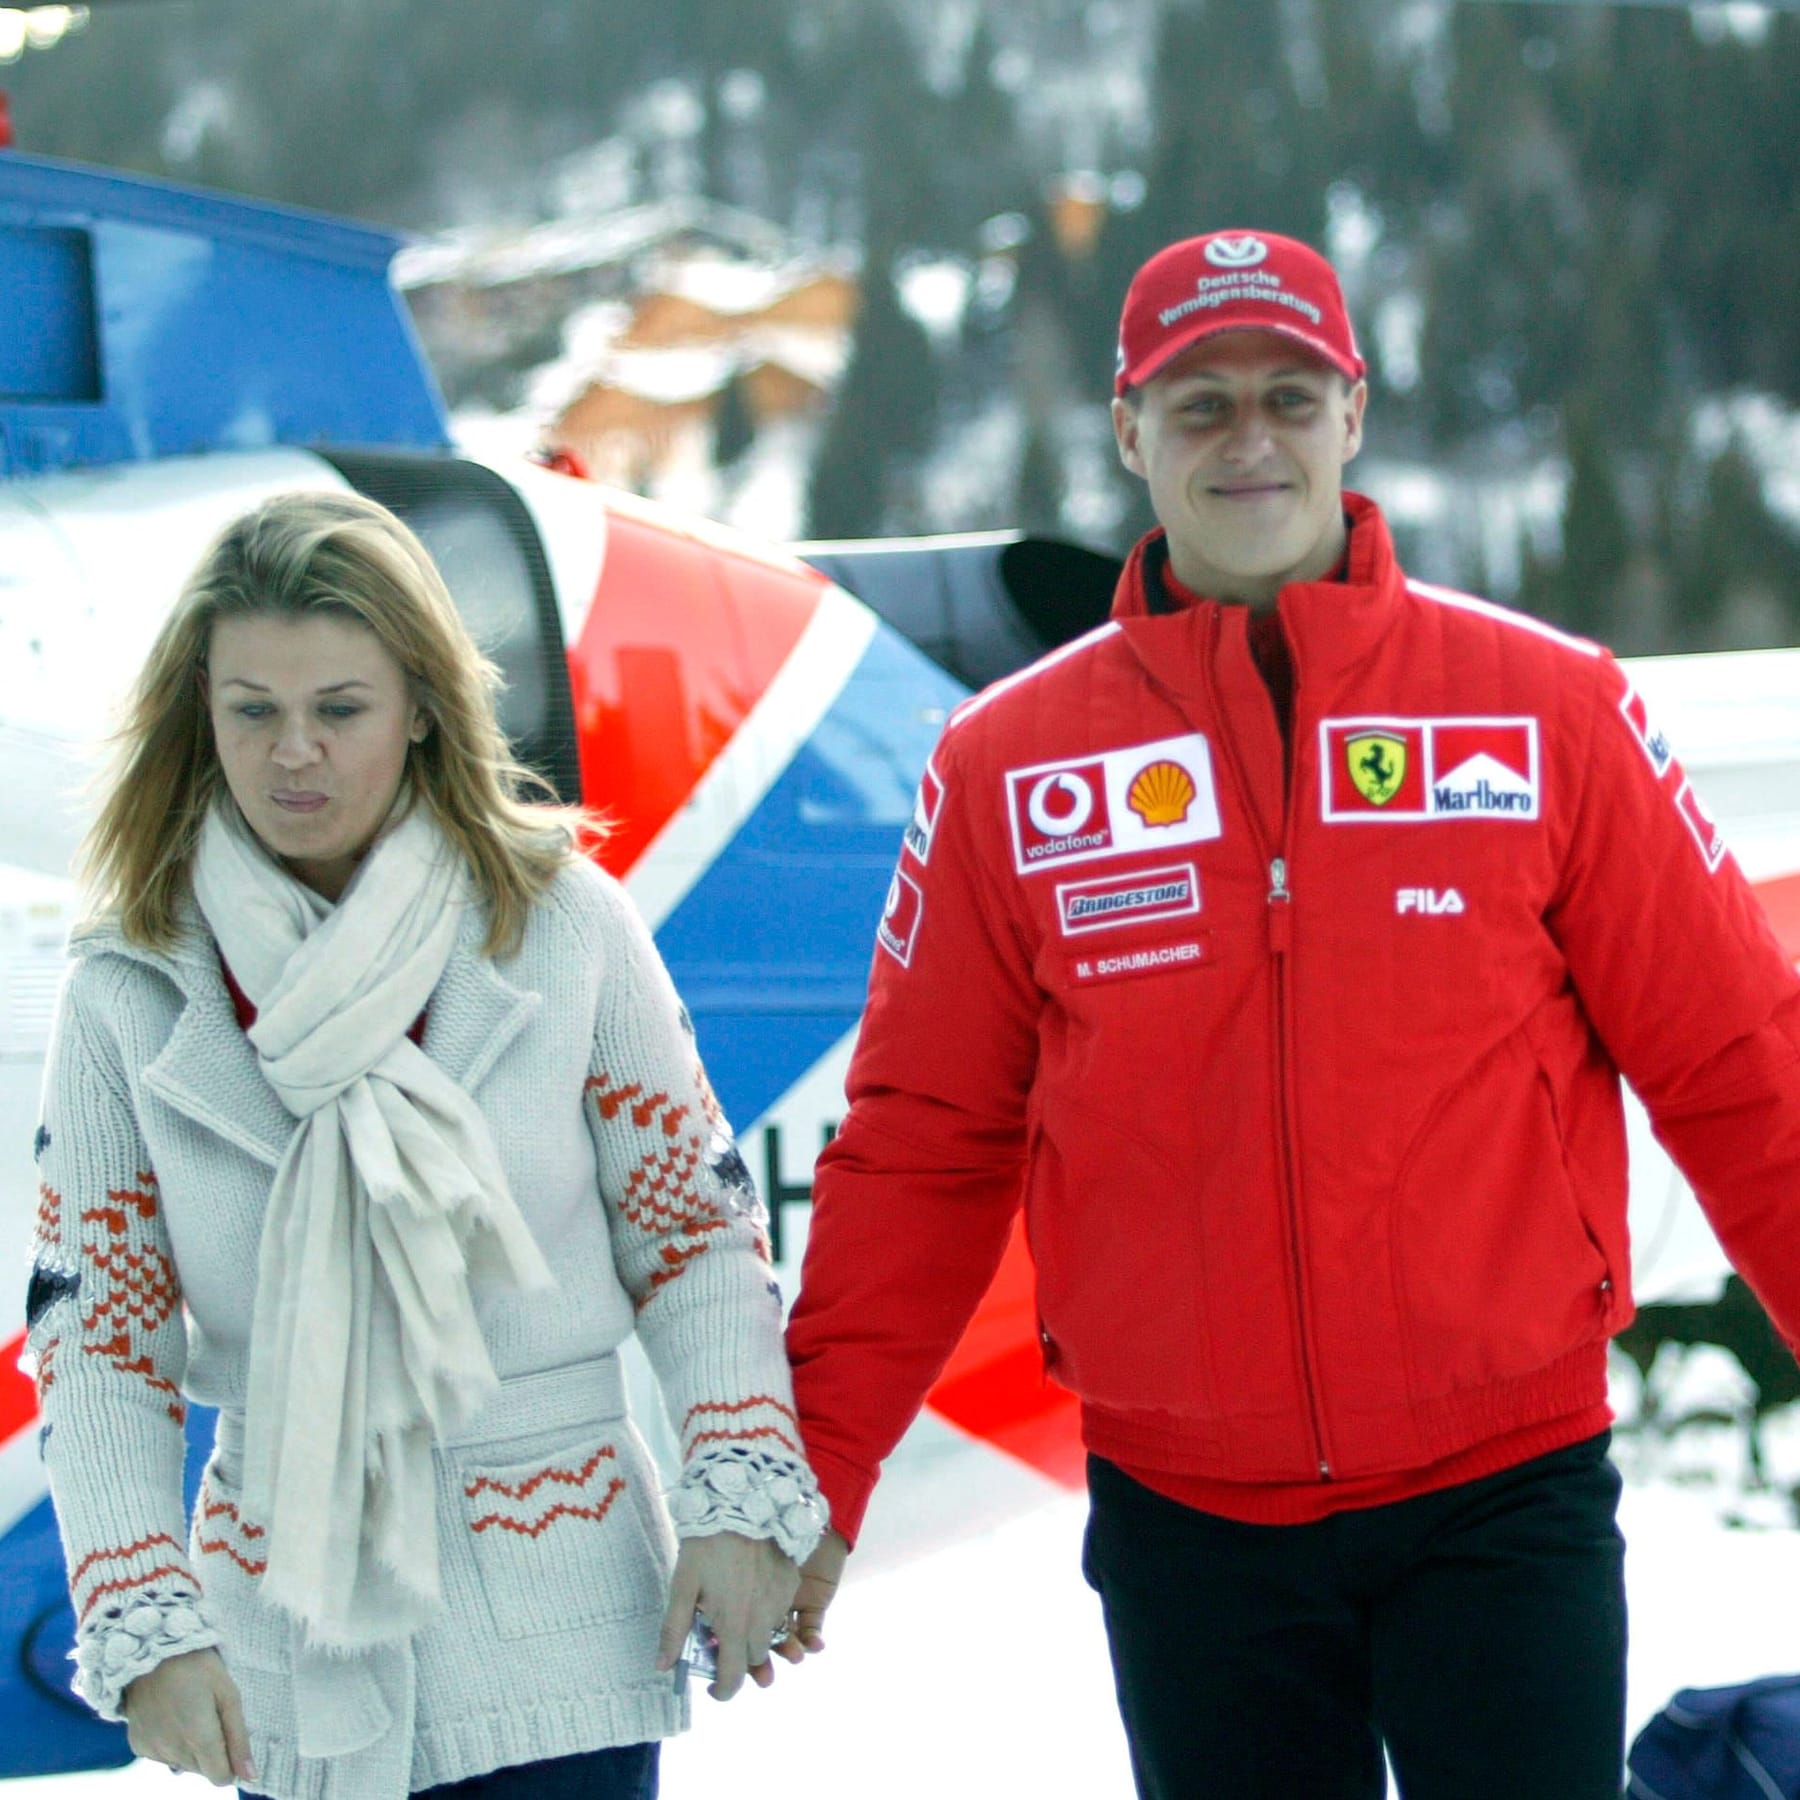 10 Jahre nach dem Skiunfall: Sein Bruder Ralf und Sohn Mick über Rennfahrer  Michael Schumacher